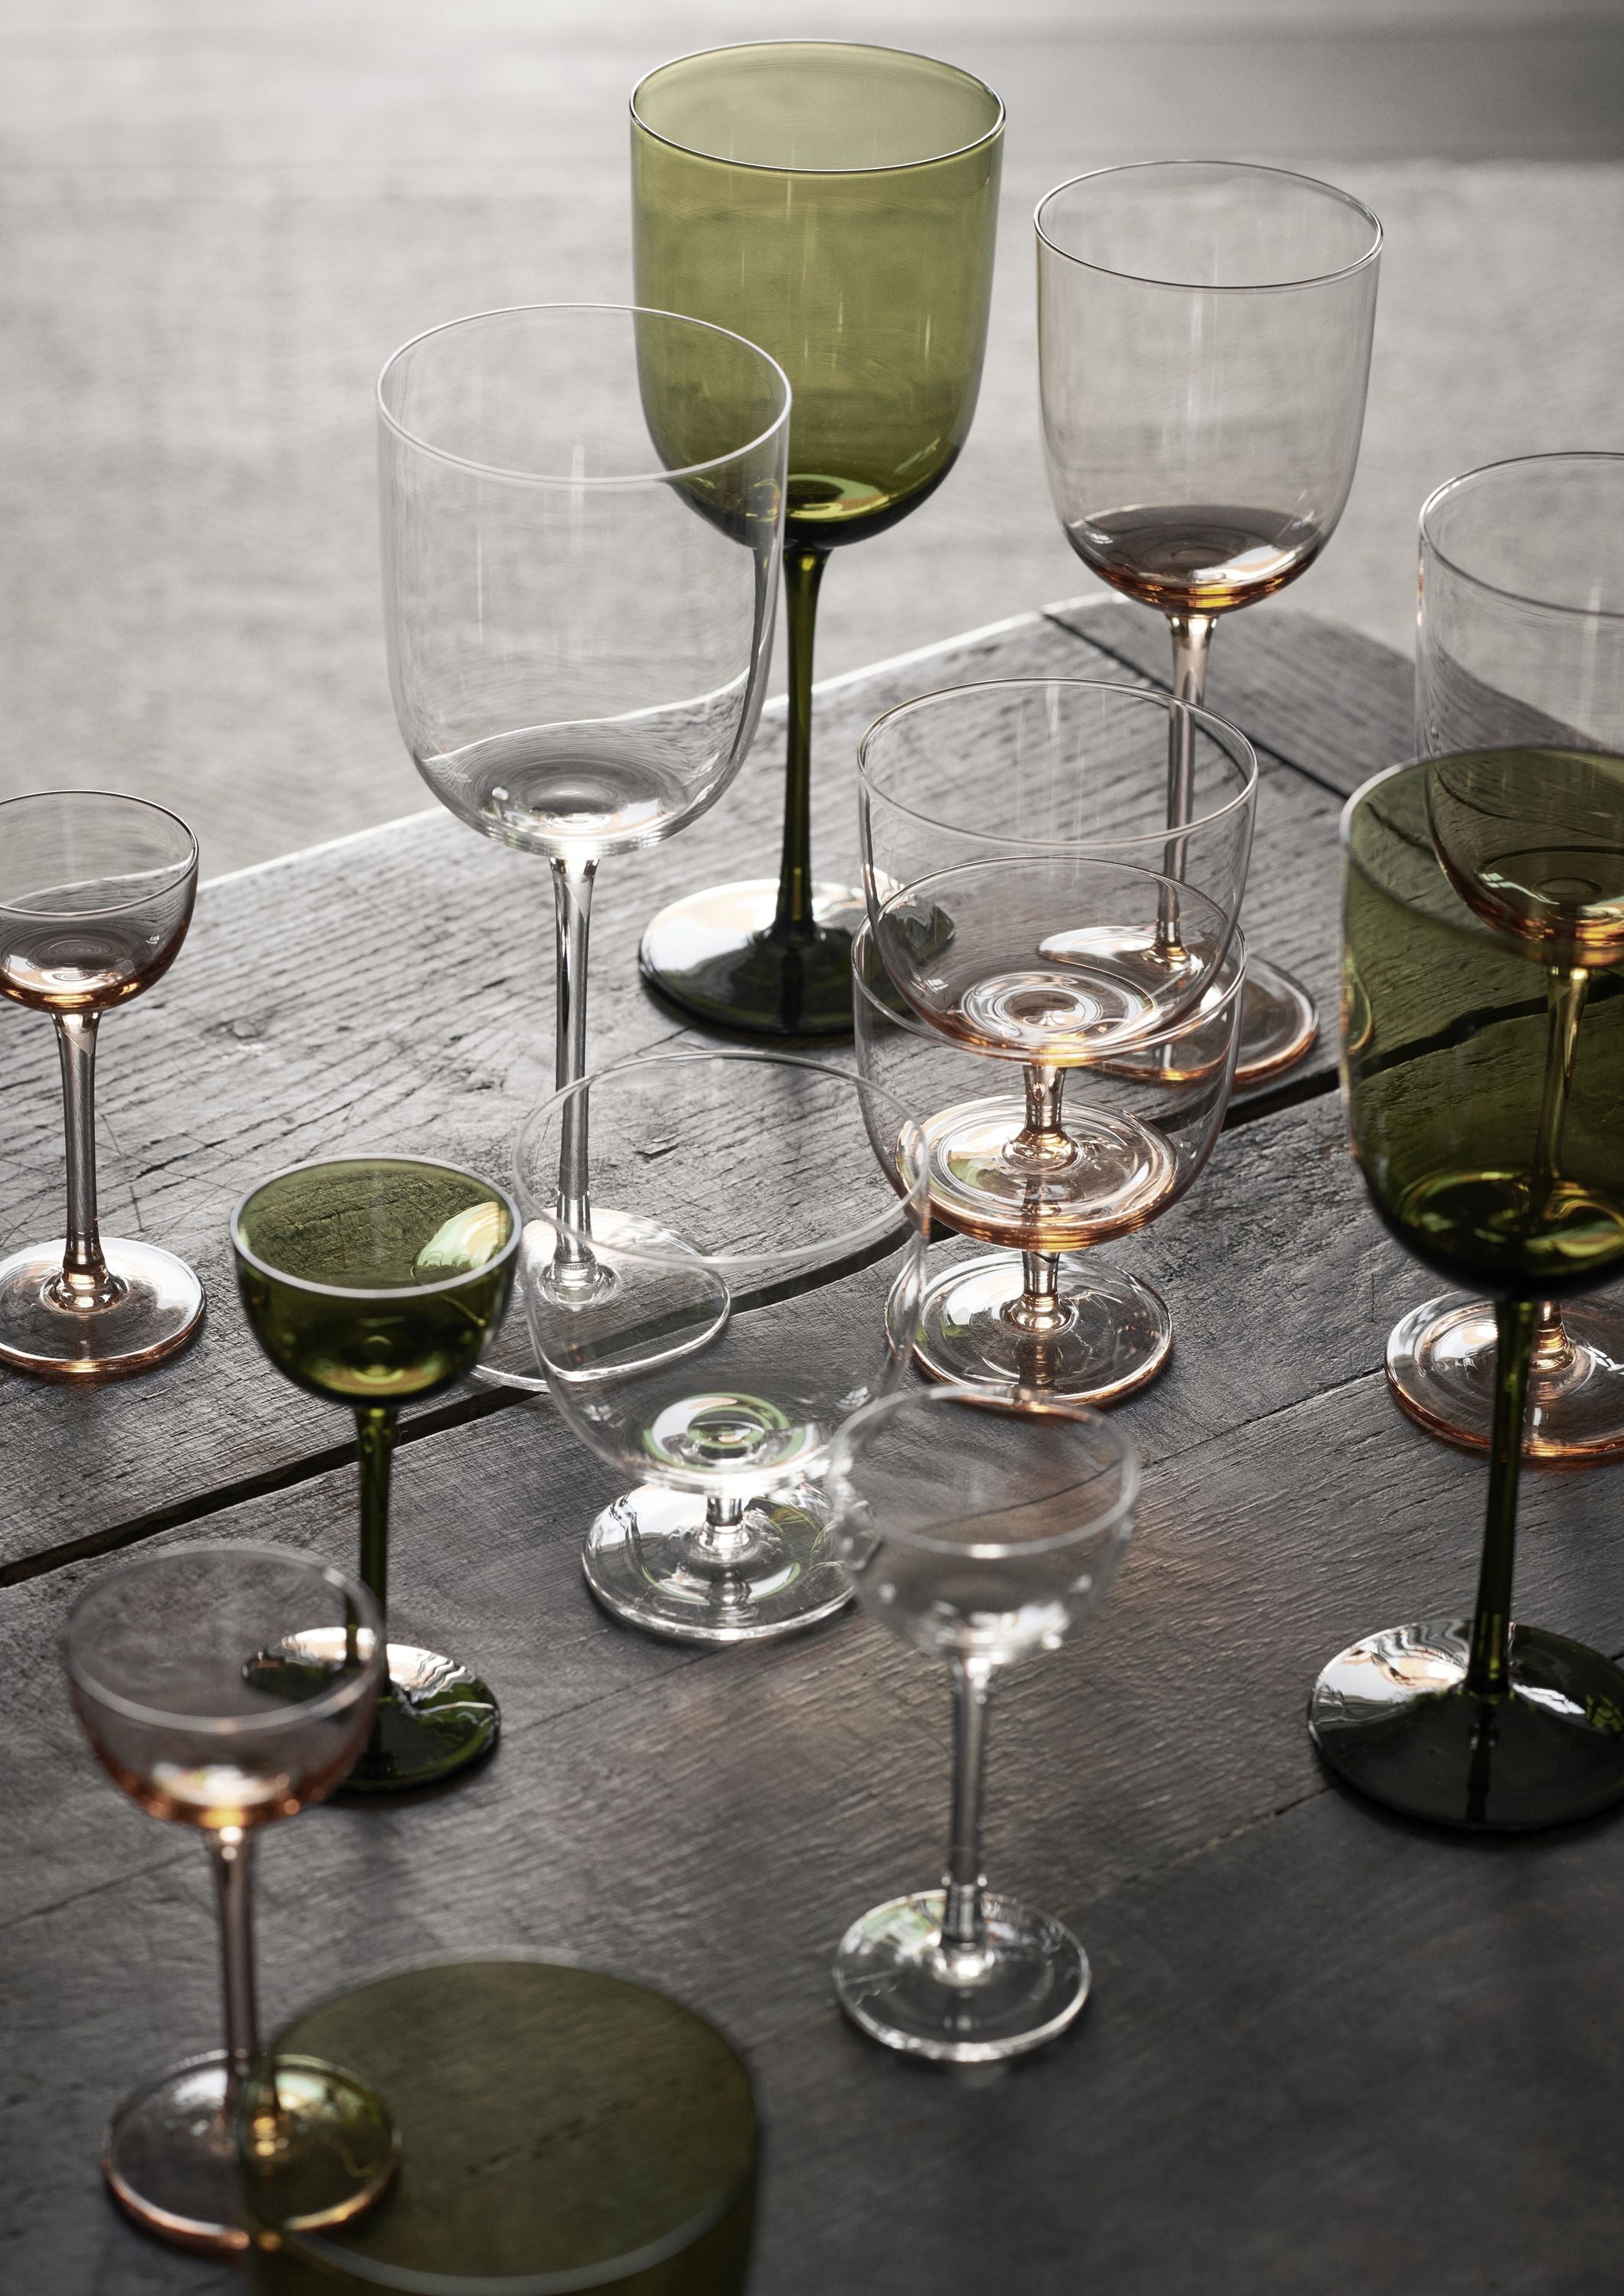 Ferm Living Host White Wine Glasses 30 Cl Set Of 2, Blush